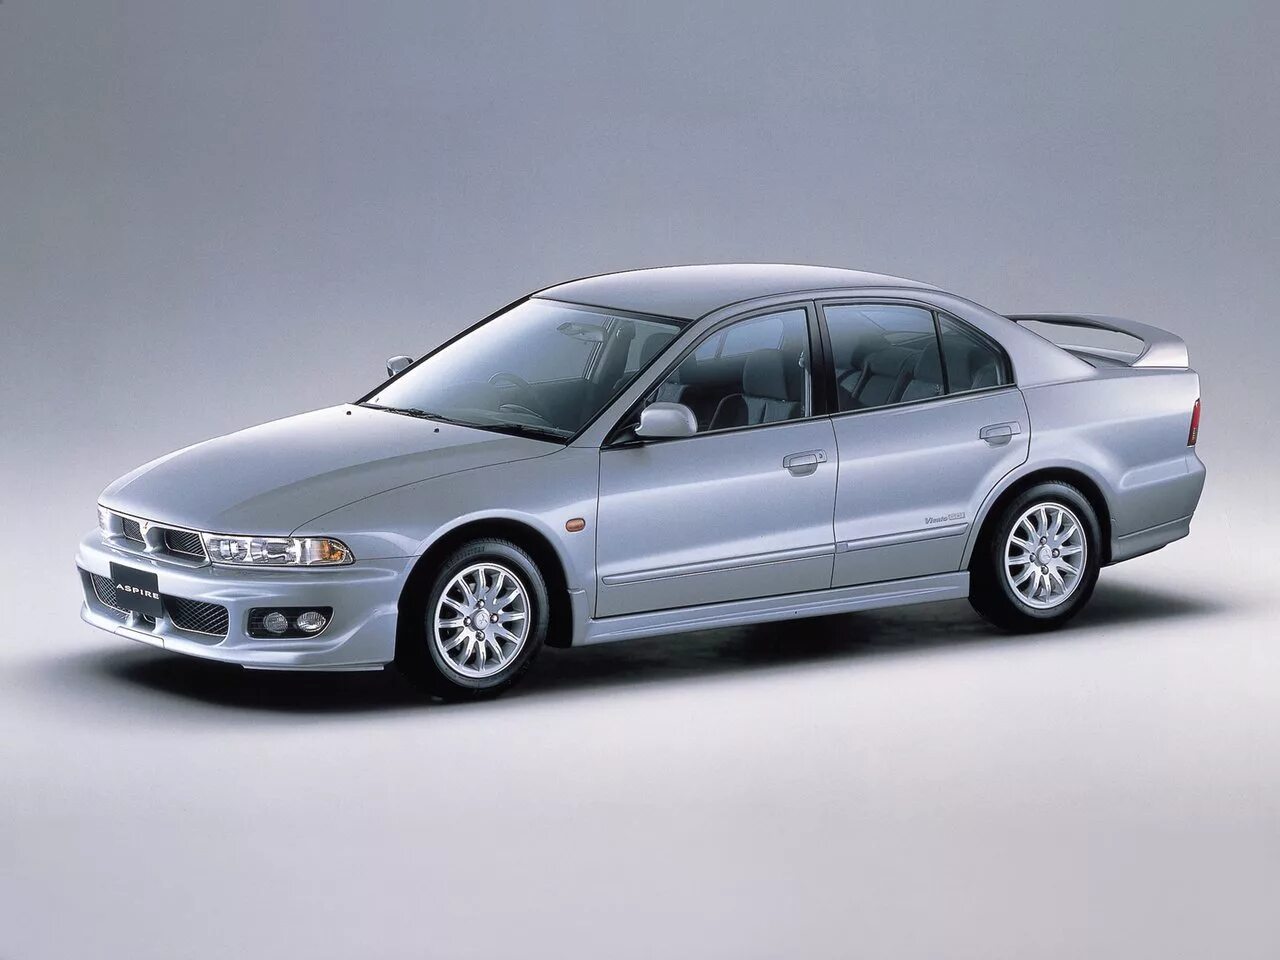 Mitsubishi название. Mitsubishi Aspire, 1998. Митсубиси Аспайр 1998. Mitsubishi седан 1998. Митсубиси Галант 8 Aspire.